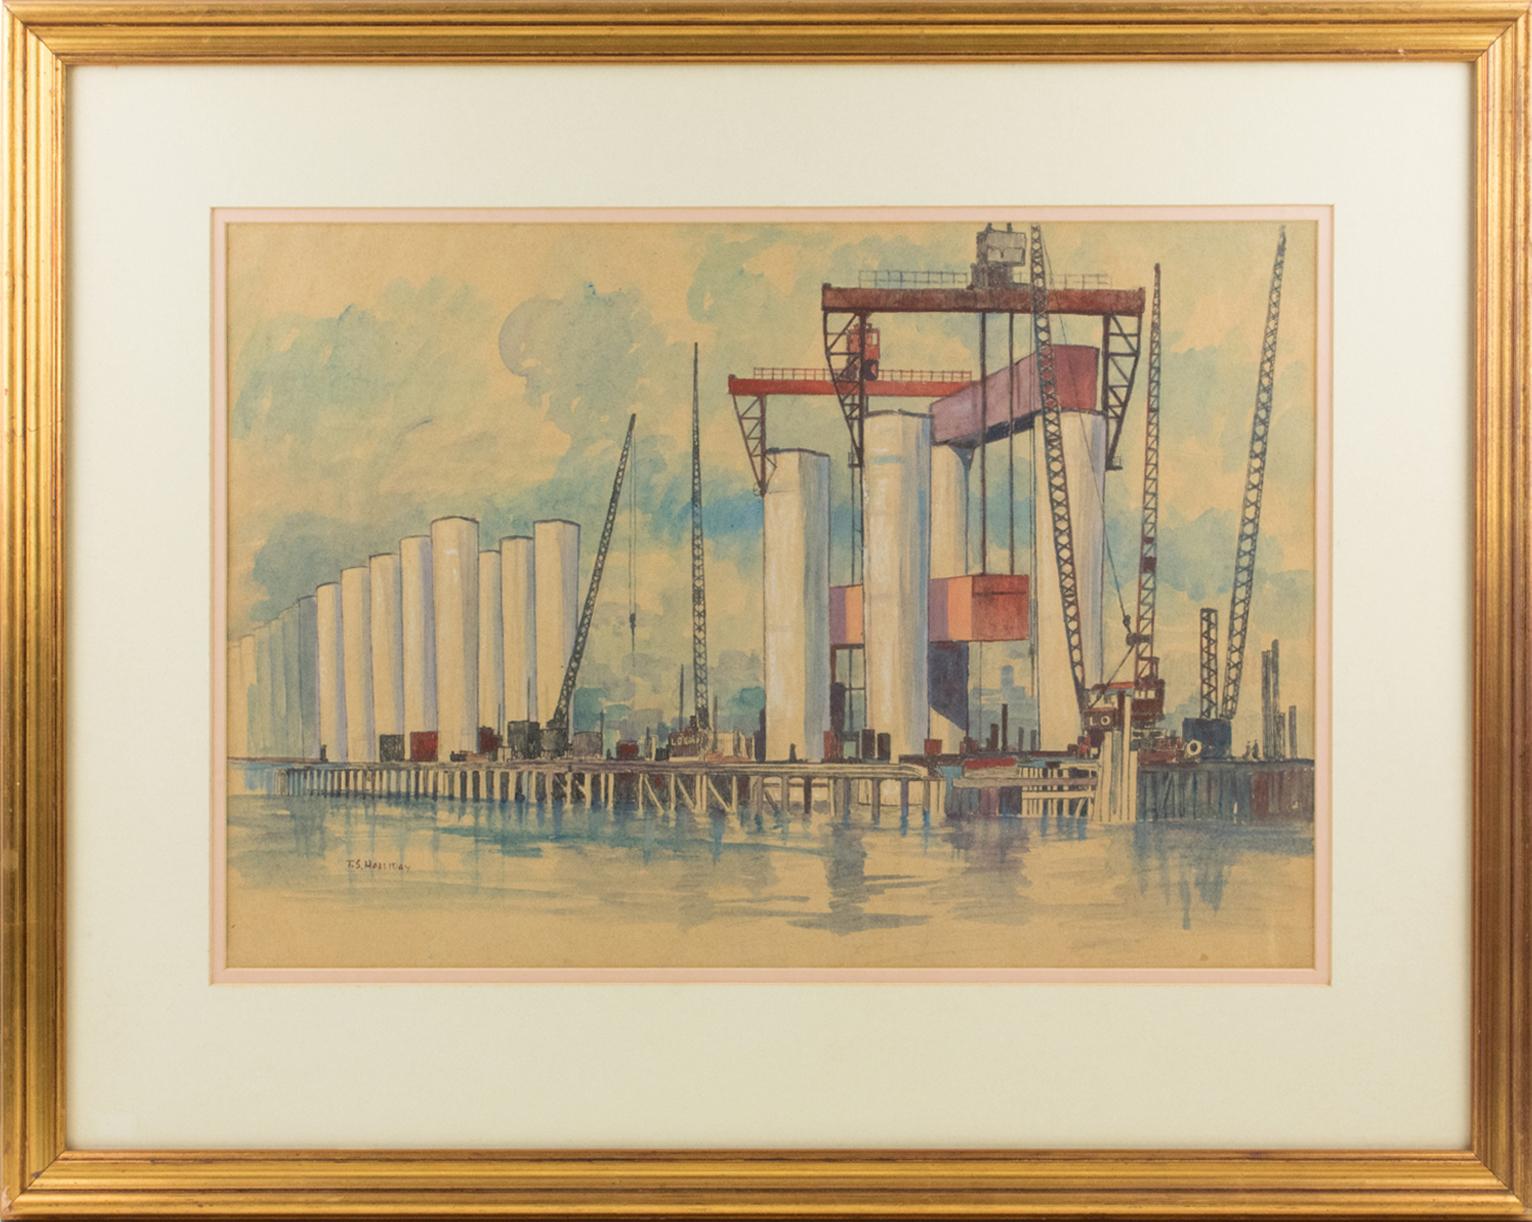 Thomas Symington Halliday Landscape Painting - Industrial Bridge Construction Seascape Pastel Painting by Thomas S. Halliday